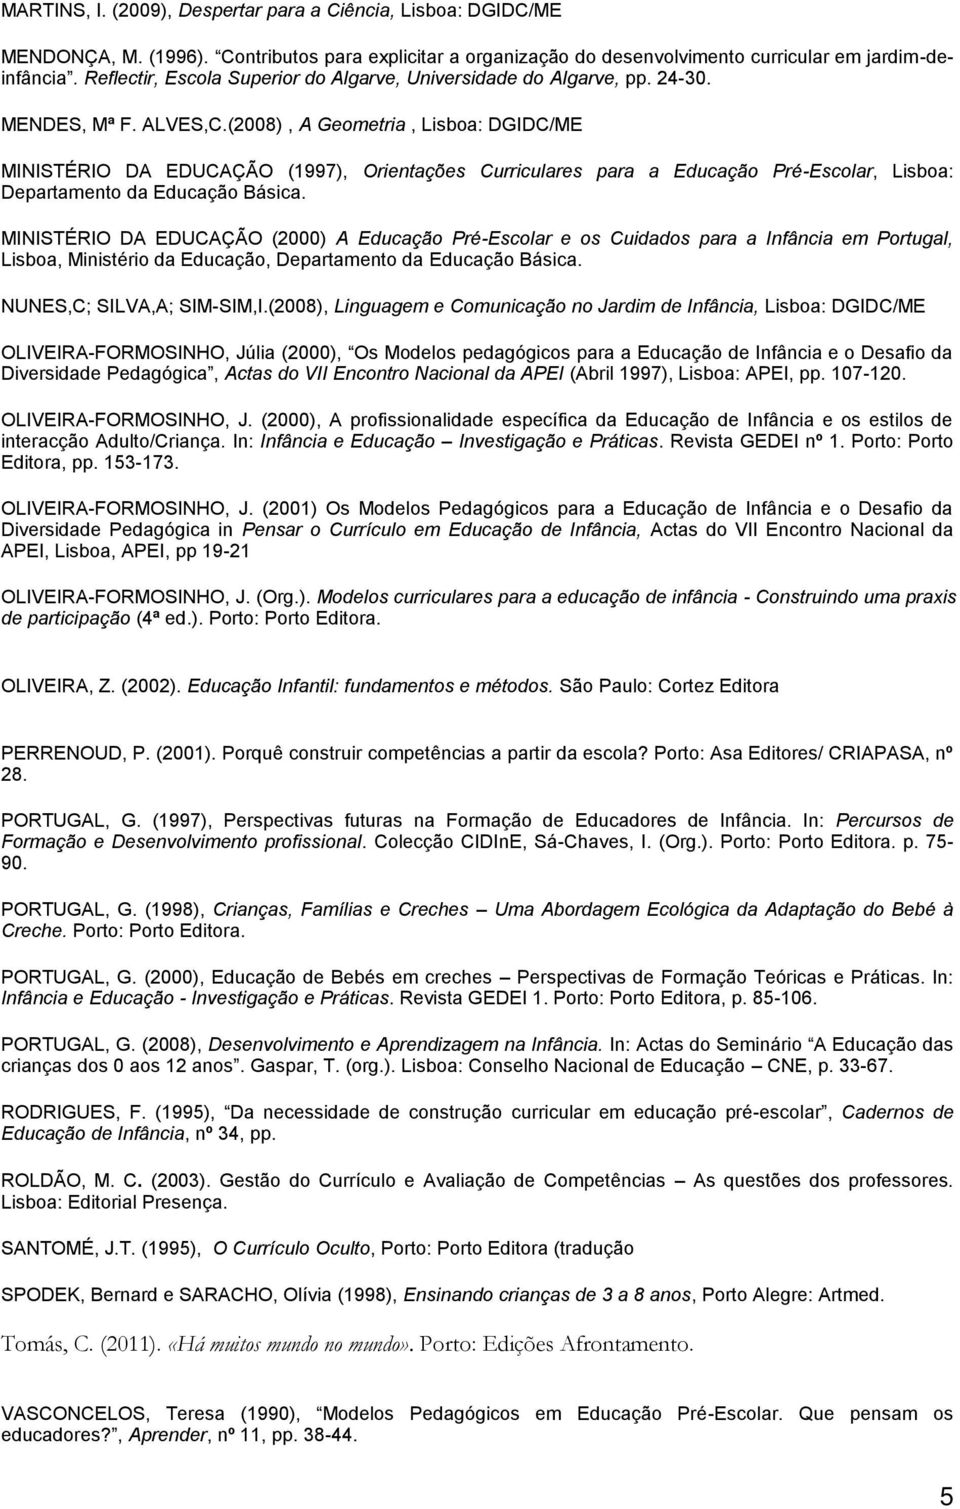 (2008), A Geometria, Lisboa: DGIDC/ME MINISTÉRIO DA EDUCAÇÃO (1997), Orientações Curriculares para a Educação Pré-Escolar, Lisboa: Departamento da Educação Básica.